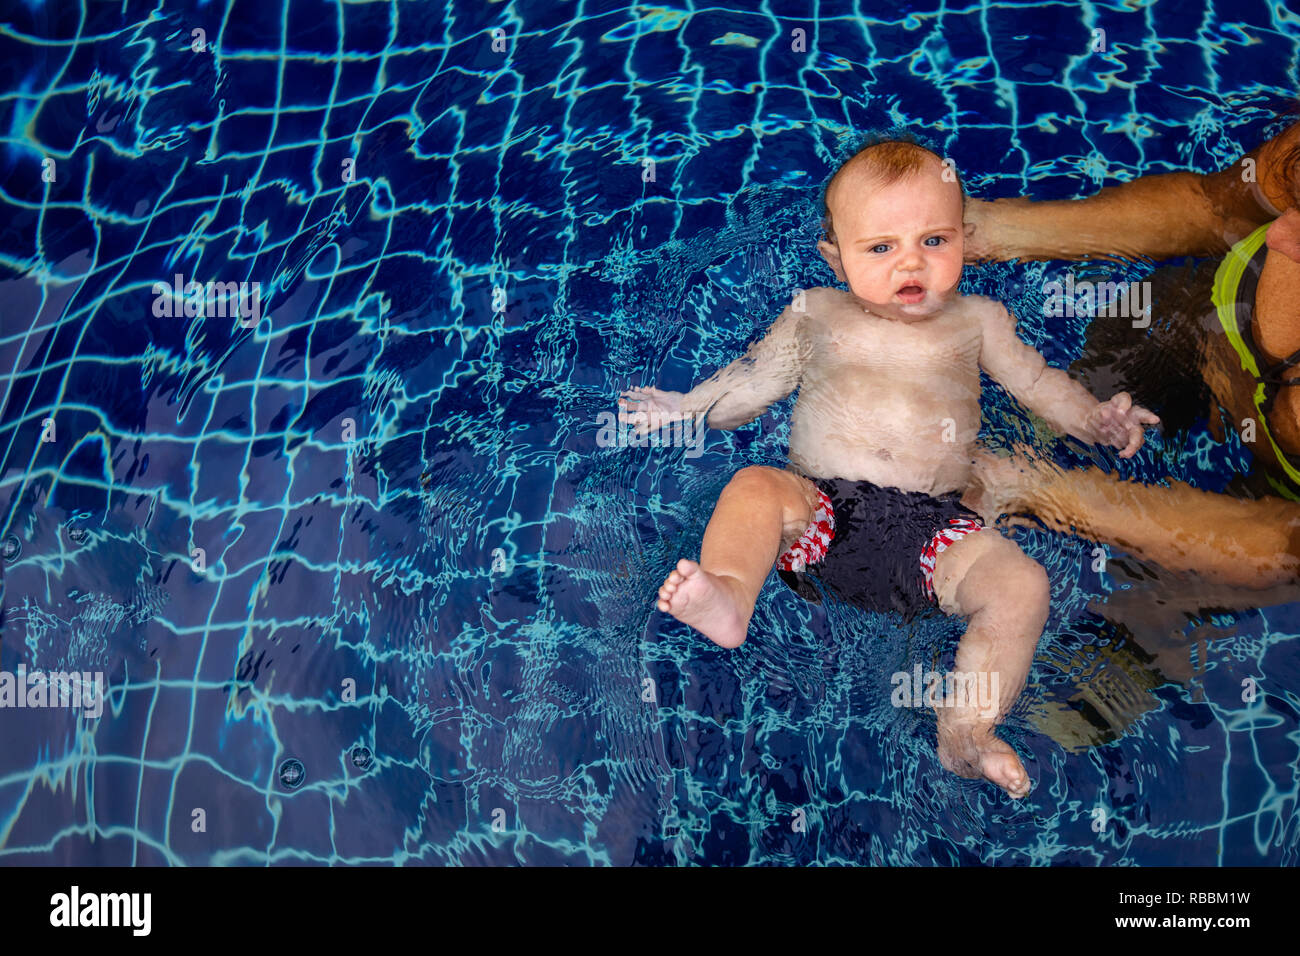 Niñito nadar en piscina con los padres Foto de stock